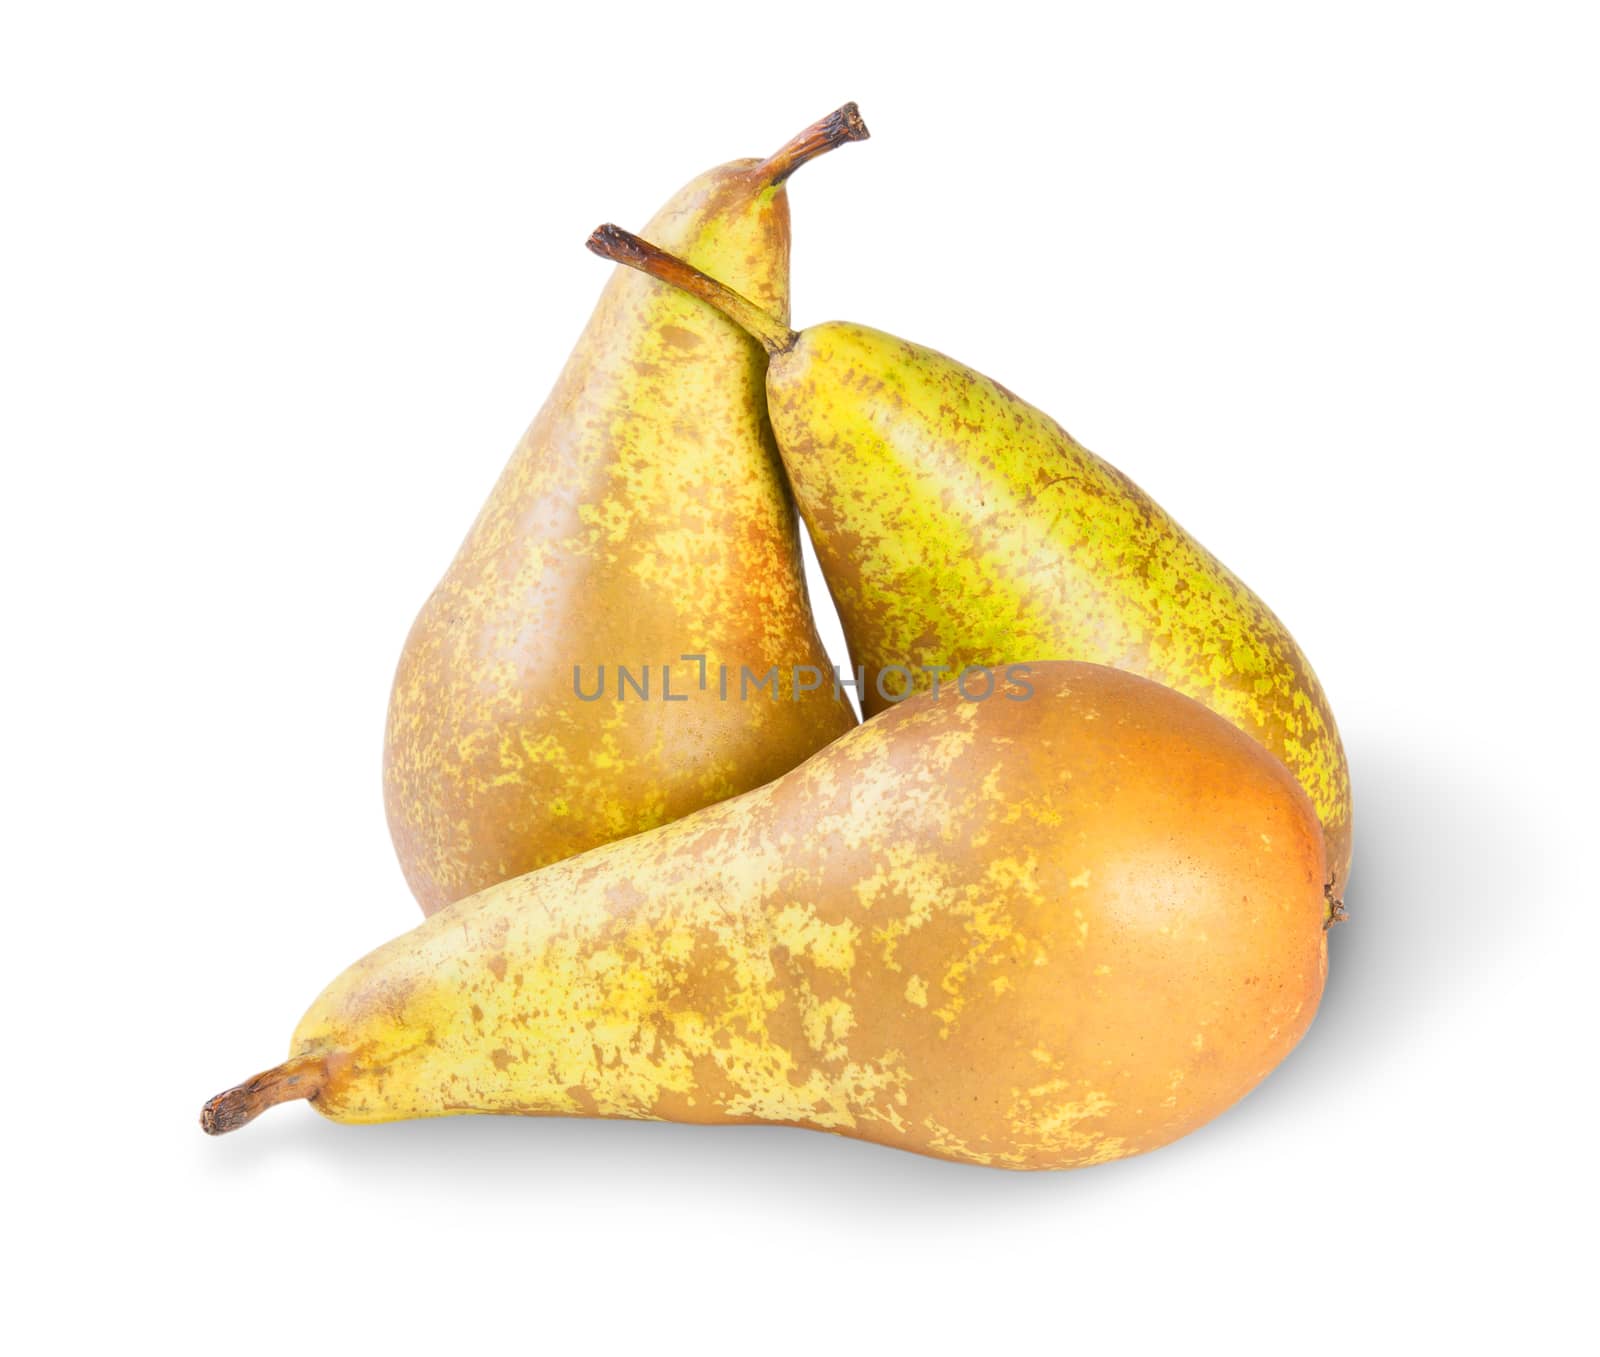 Three Ripe Pears by Cipariss